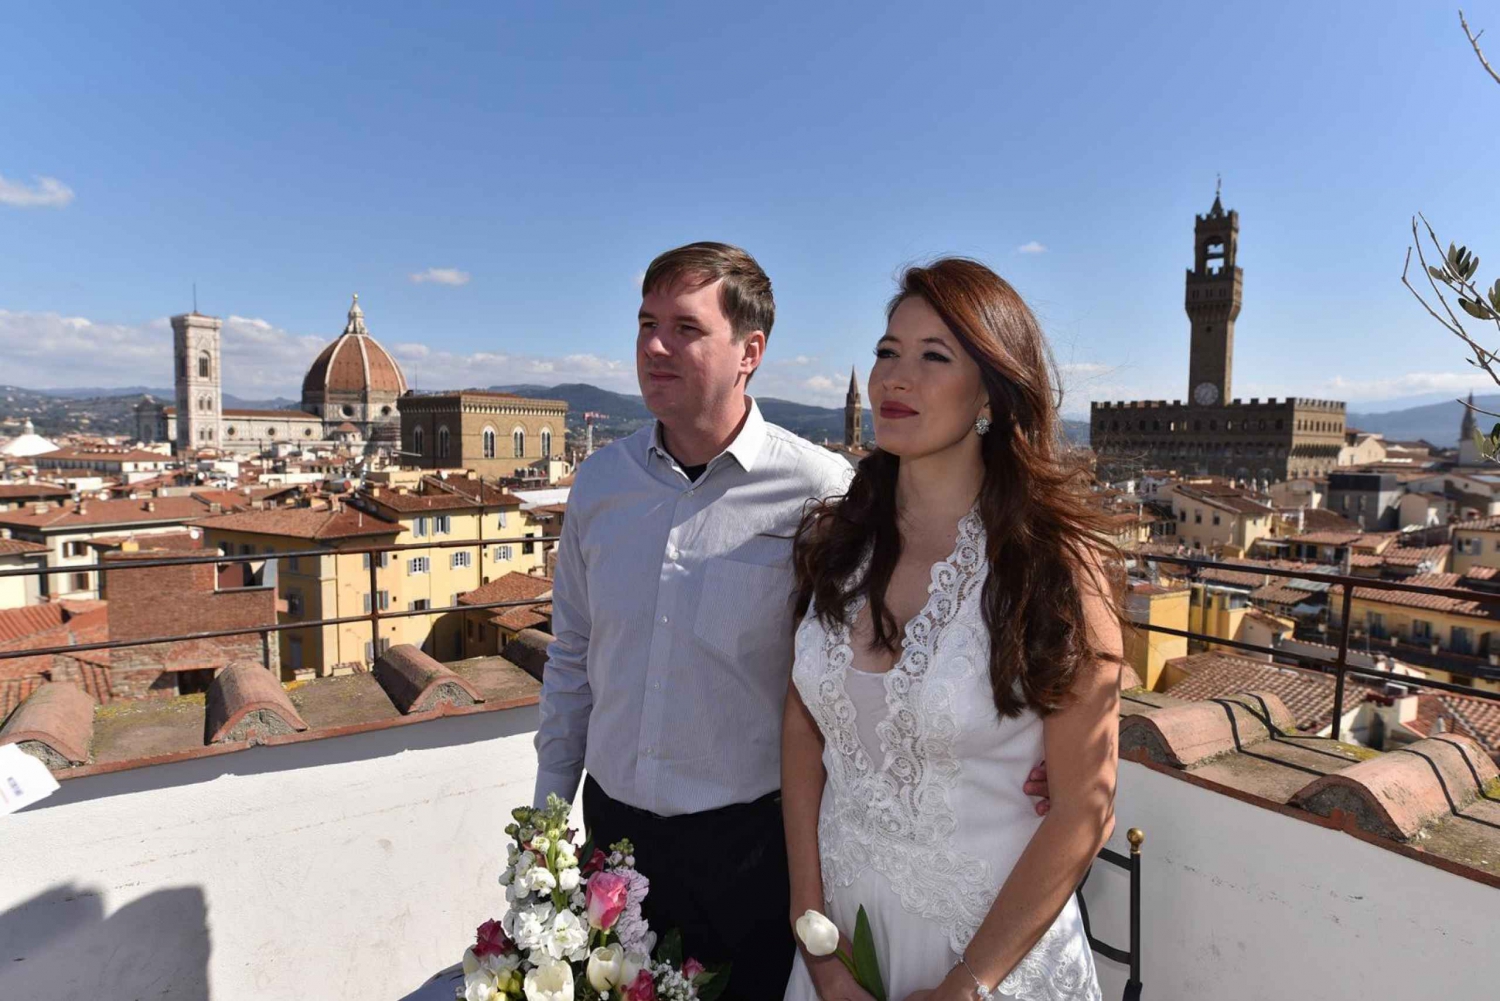 Florens: Symboliskt bröllops- och löftesförnyelsepaket